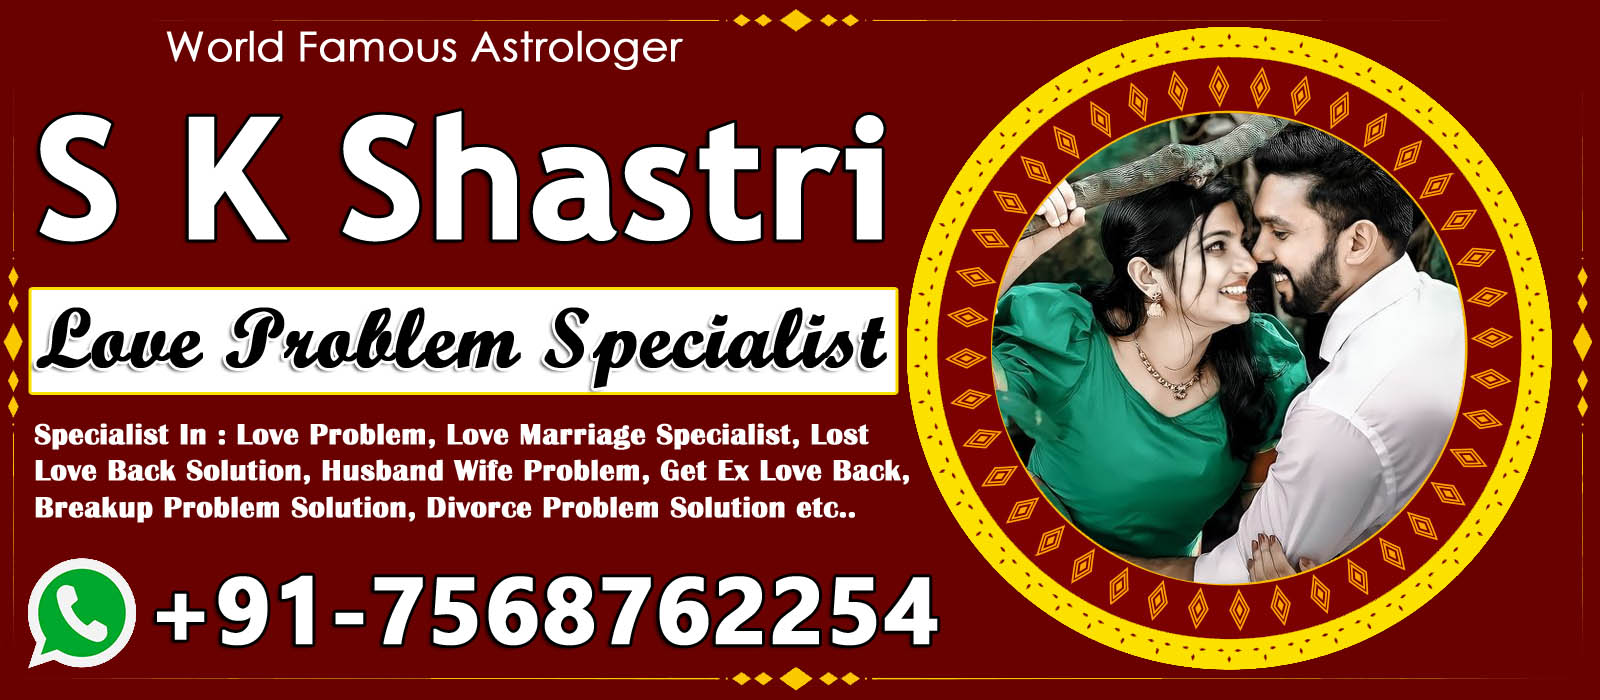 World Famous Astrologer S K Shastri Ji +91-7568762254